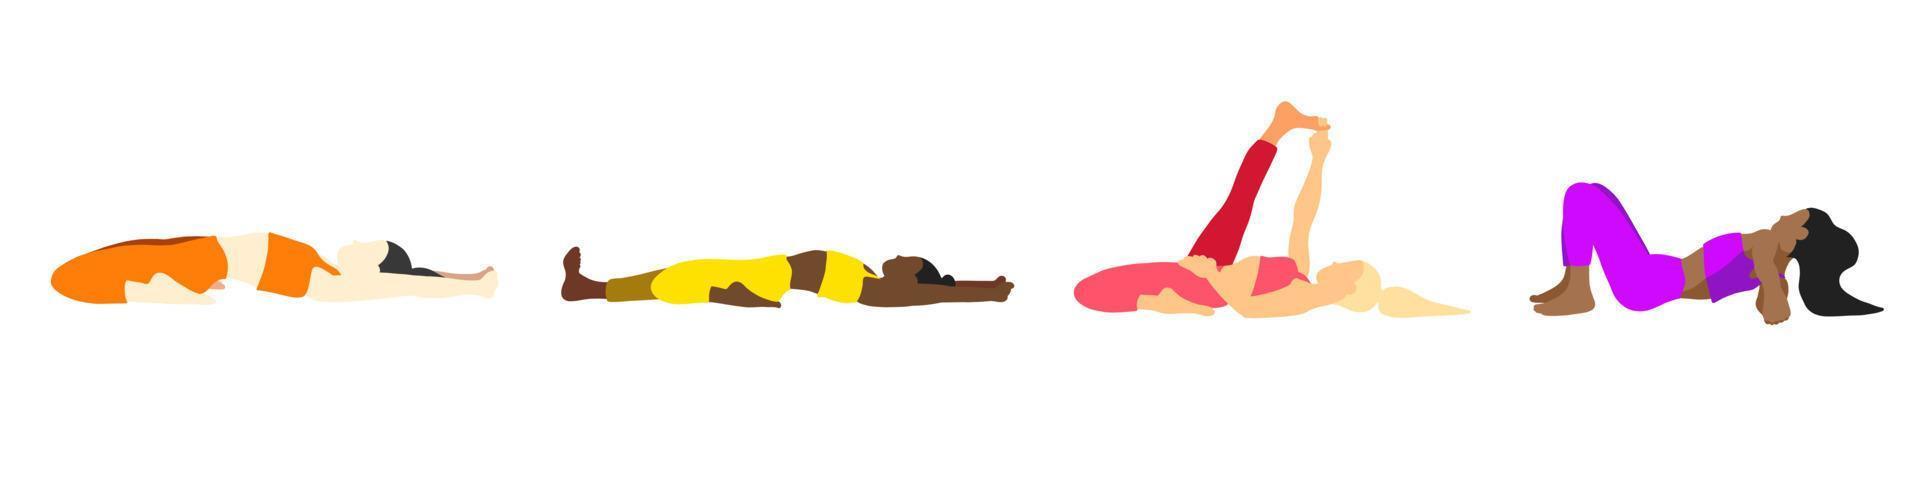 flexibilidad yoga poses recopilación. europeo, africano, asiático femenino, dama, mujer, muchacha. pilates, mental salud, capacitación, gimnasia. vector ilustración en dibujos animados plano estilo aislado en blanco antecedentes.